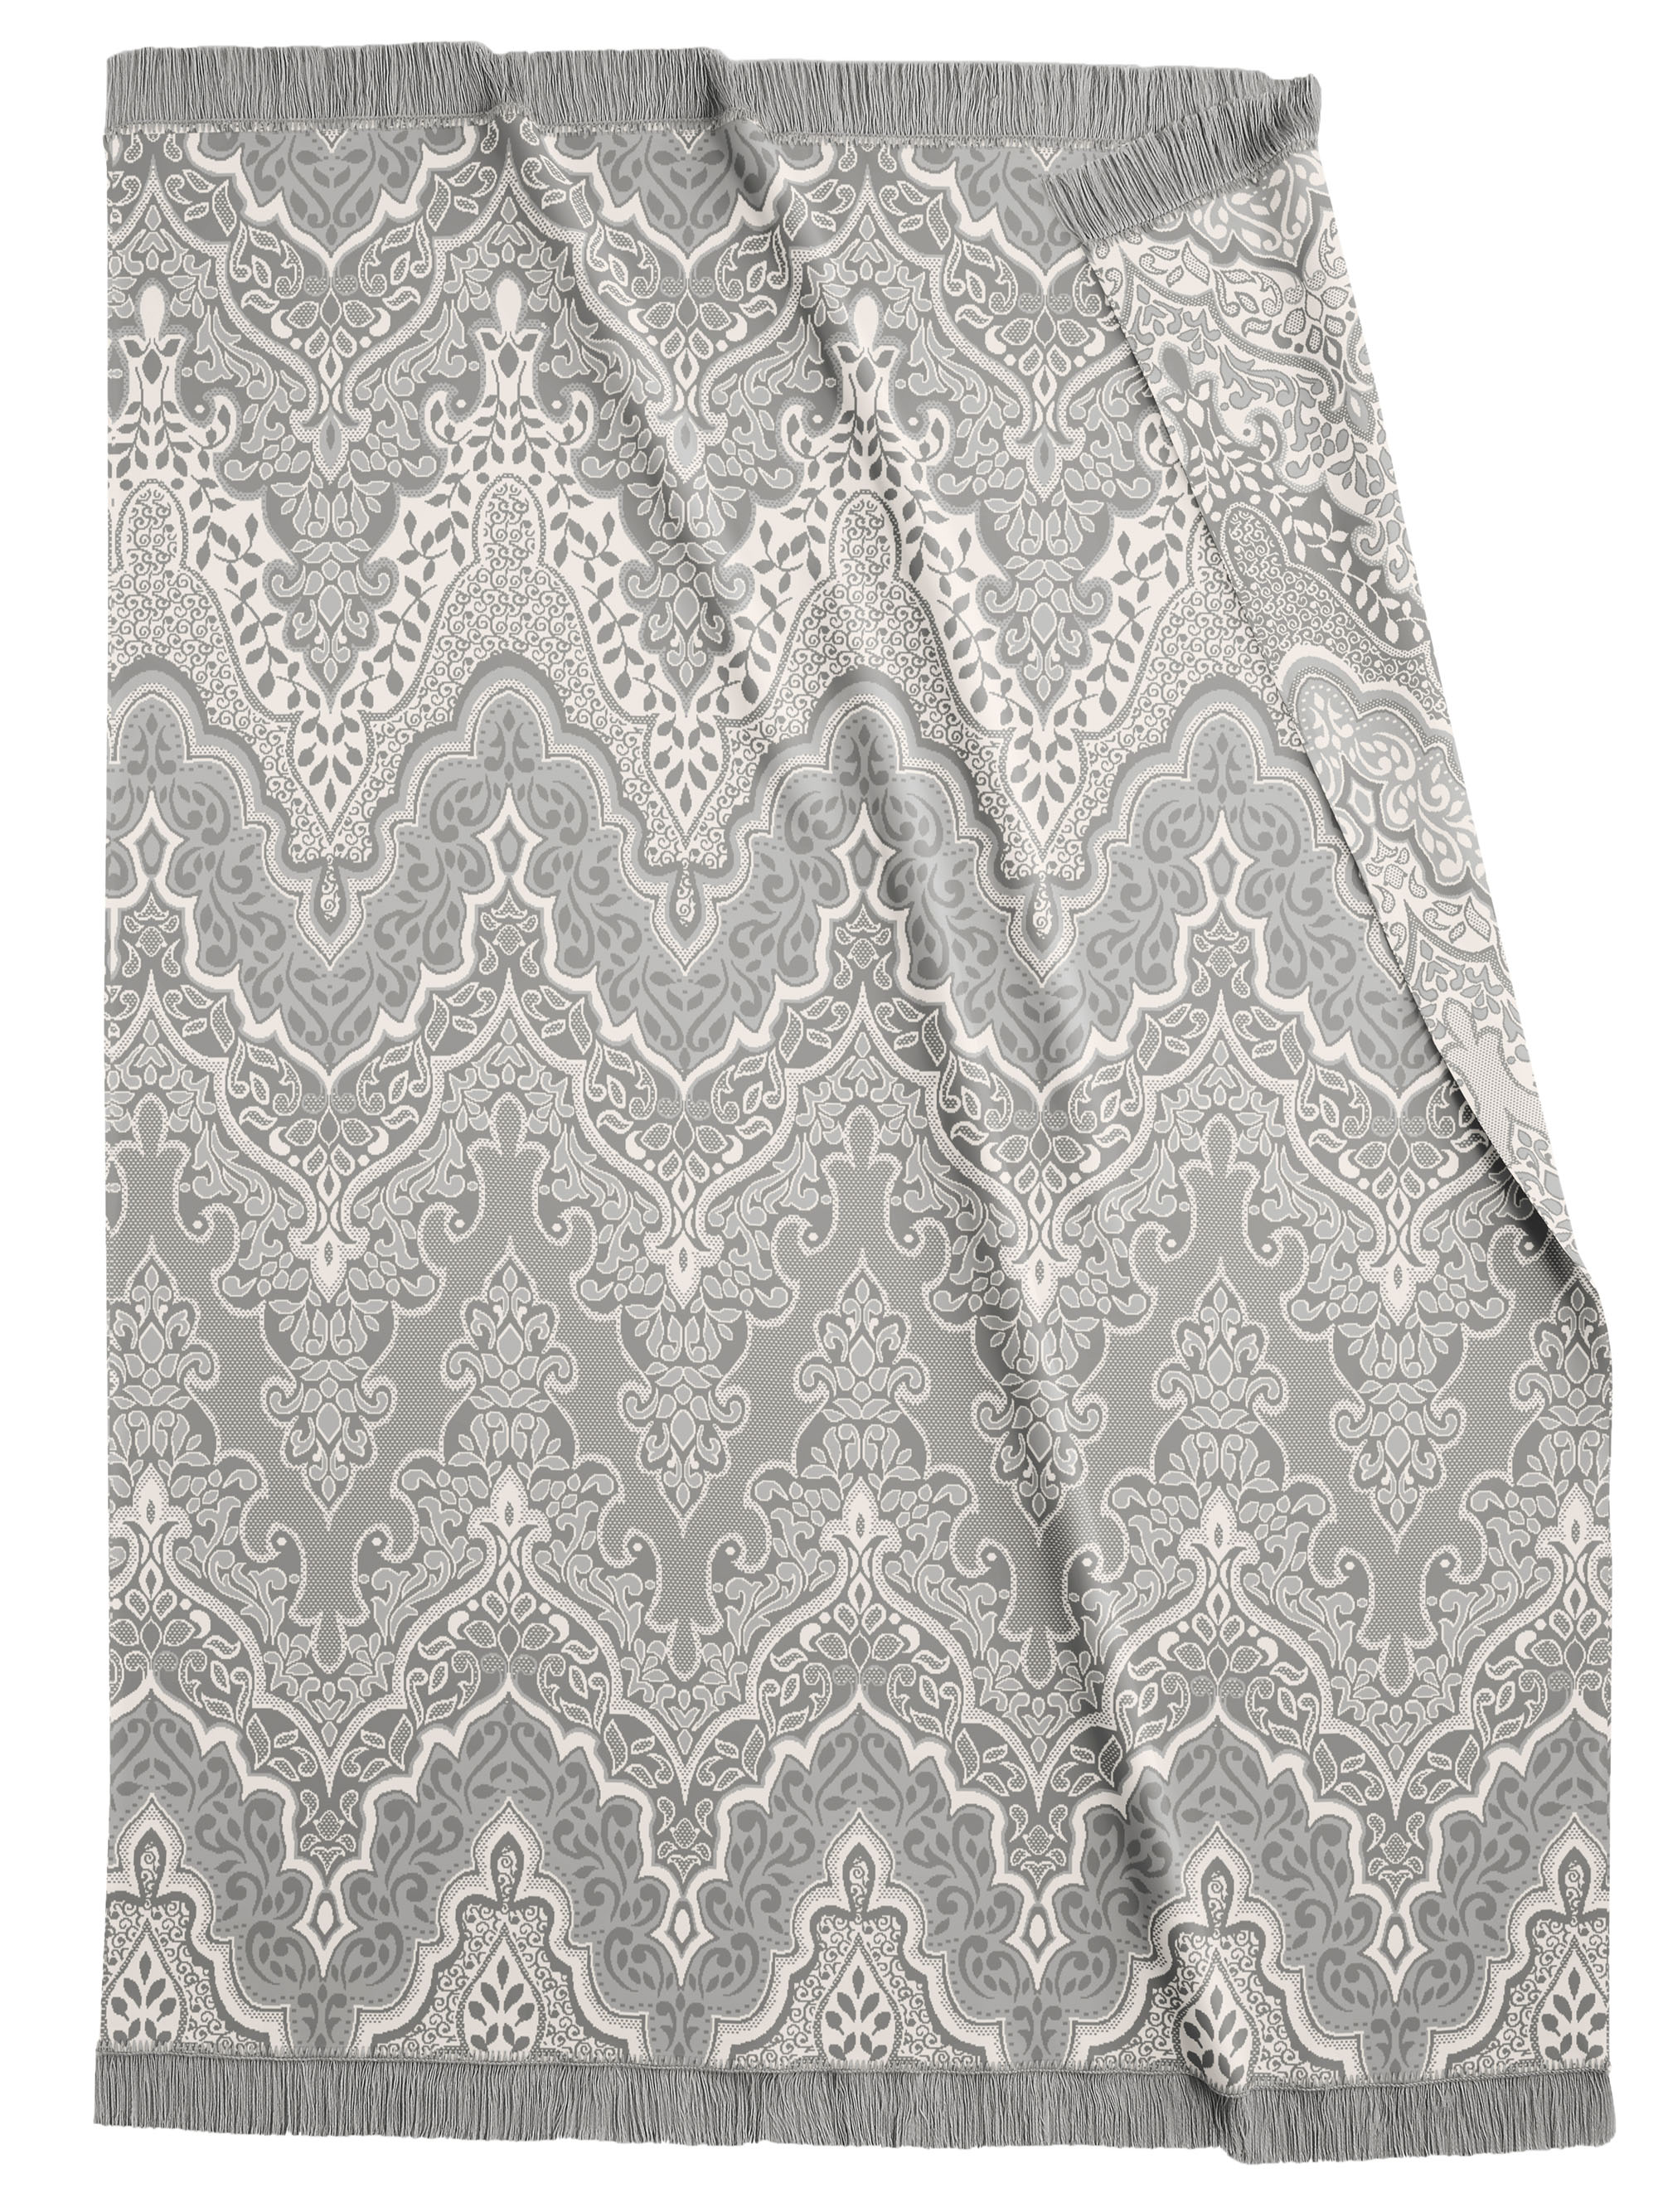 graue Wohndecke "Lace" mit Fransen und Ornament-Design